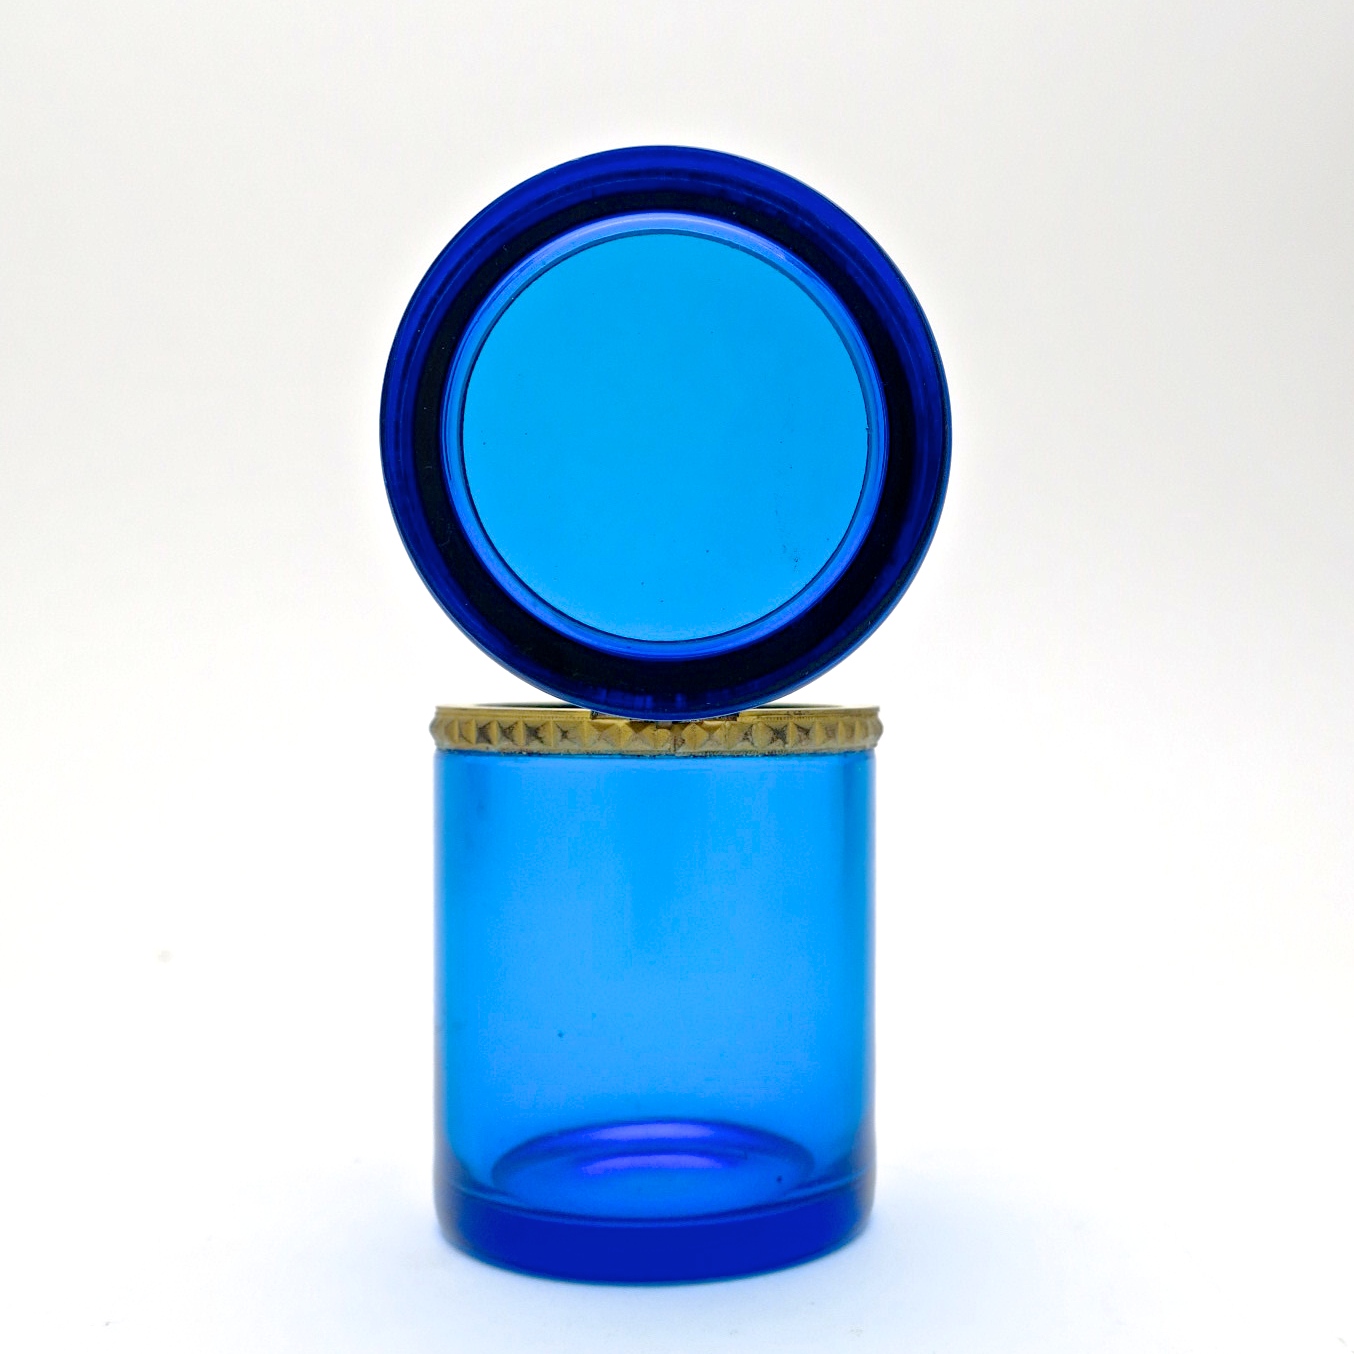 zylindrisch deckeldose trinketbox  ormolu hochzeitsgeschenk geschenk kaufmuseum midcentury design designklassik murano